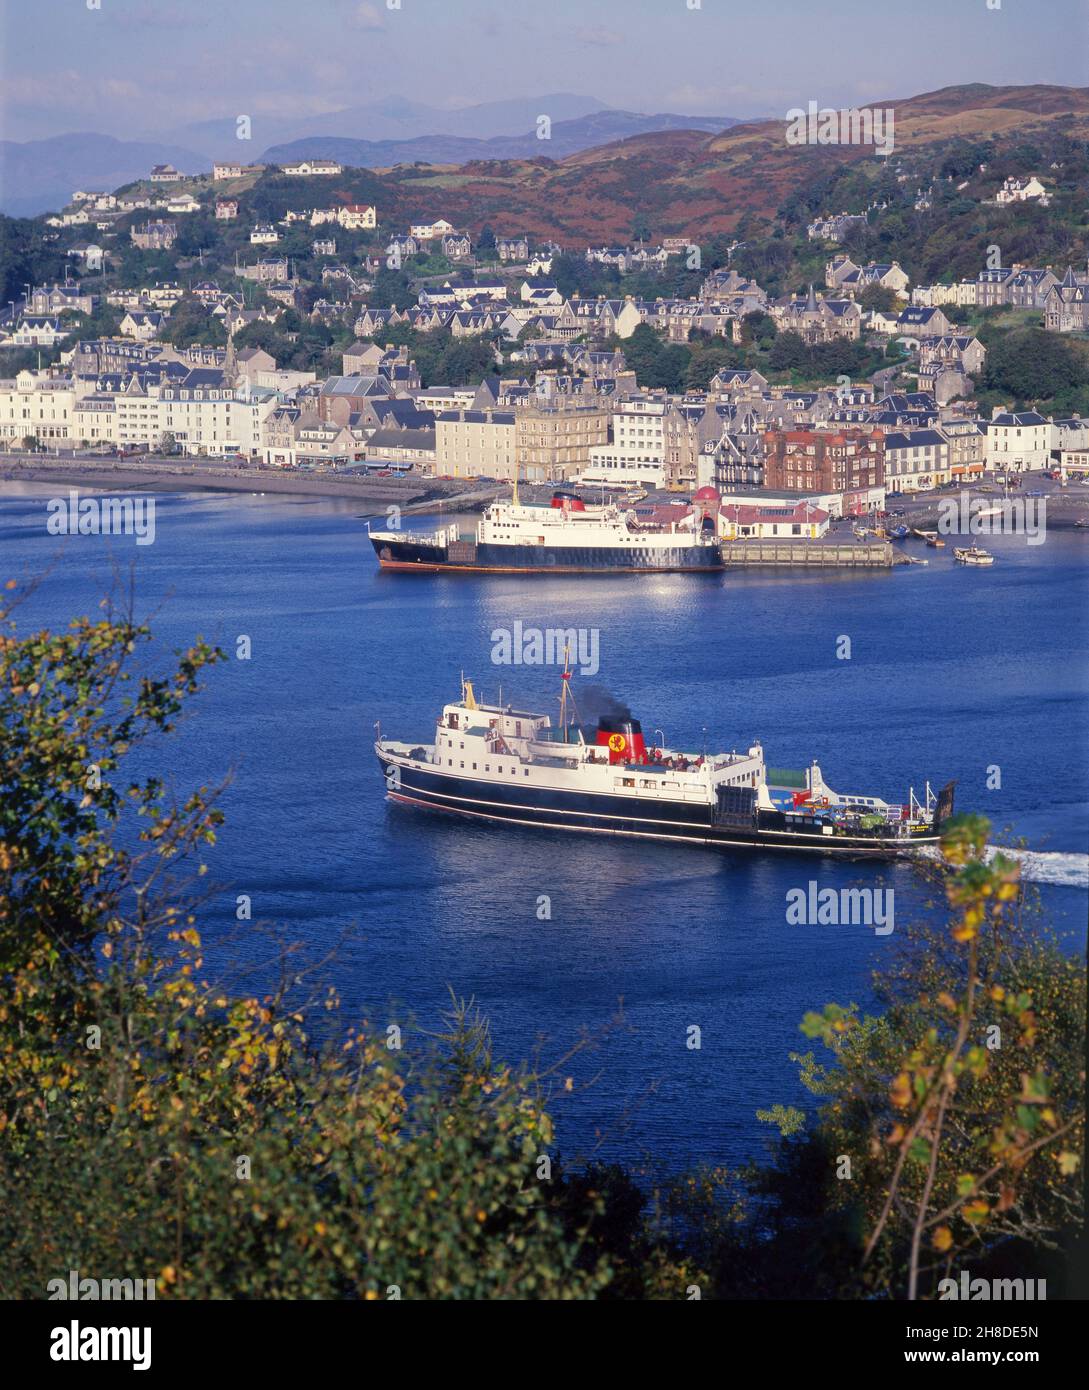 Vista de verano escena de Oban en el 1970s con el MV Glen Sannox y MV Columba a la vista, Argyll Foto de stock